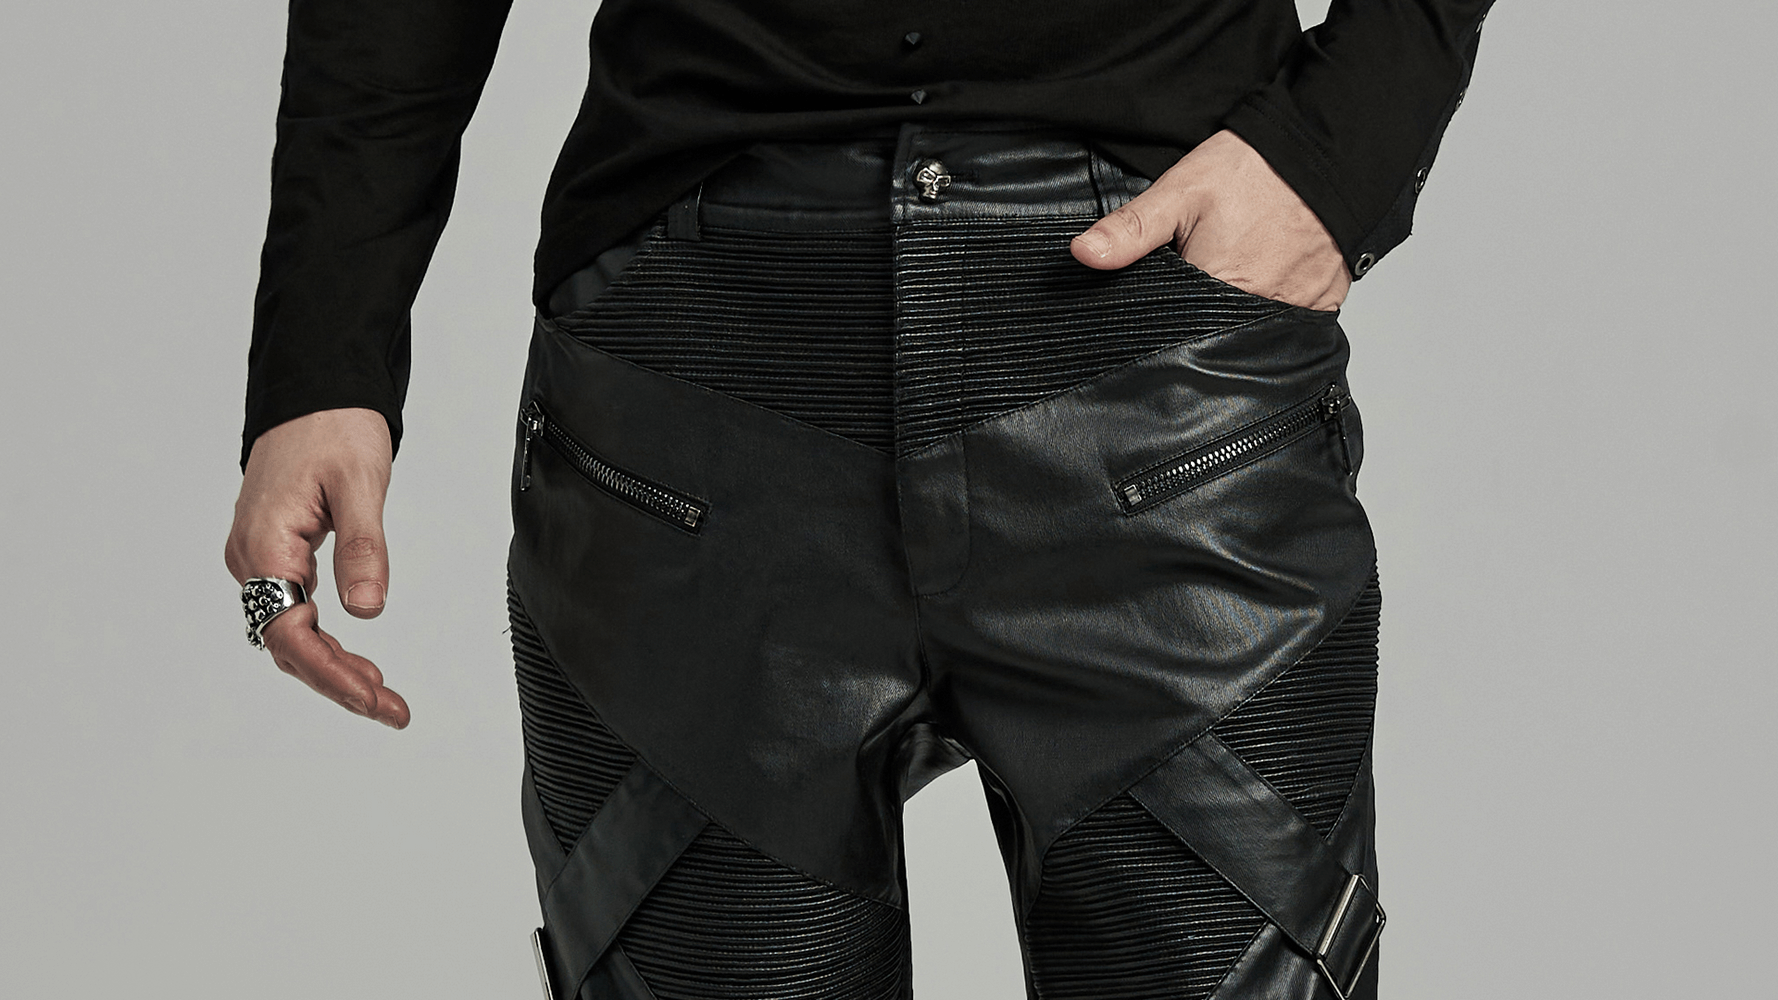 Pantalon en cuir élastique de style punk pour hommes avec fermetures à glissière